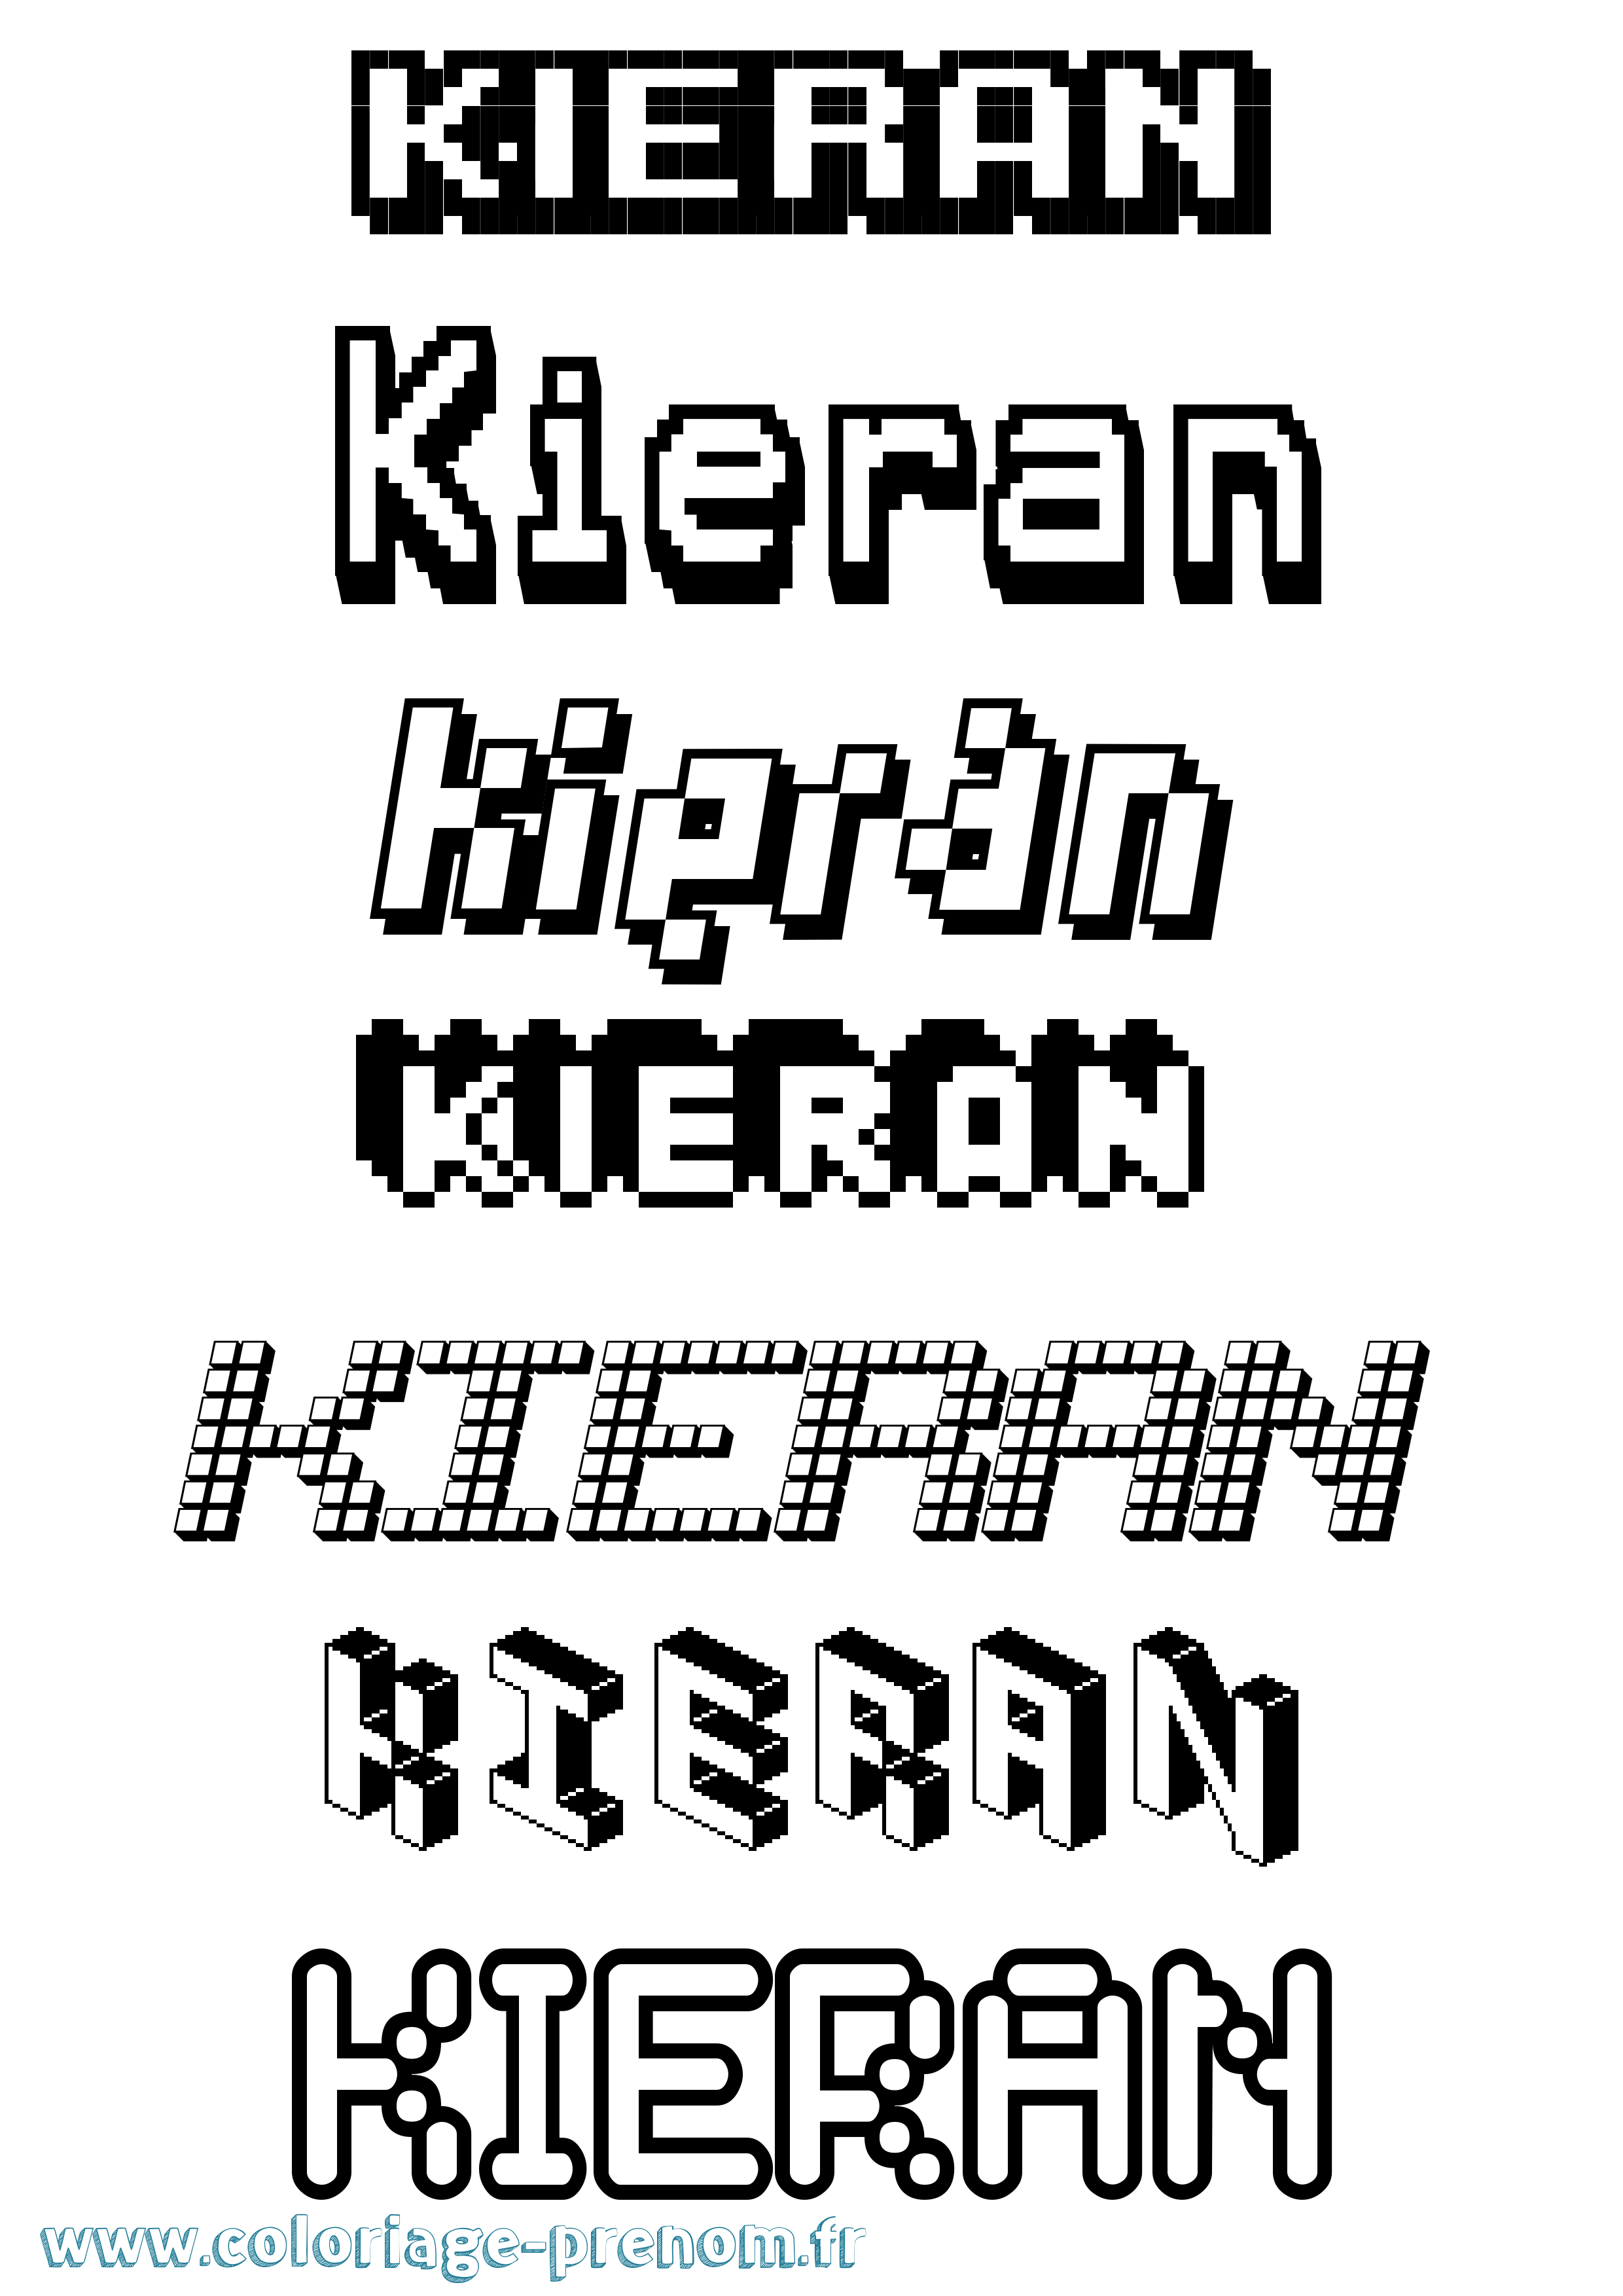 Coloriage prénom Kieran Pixel